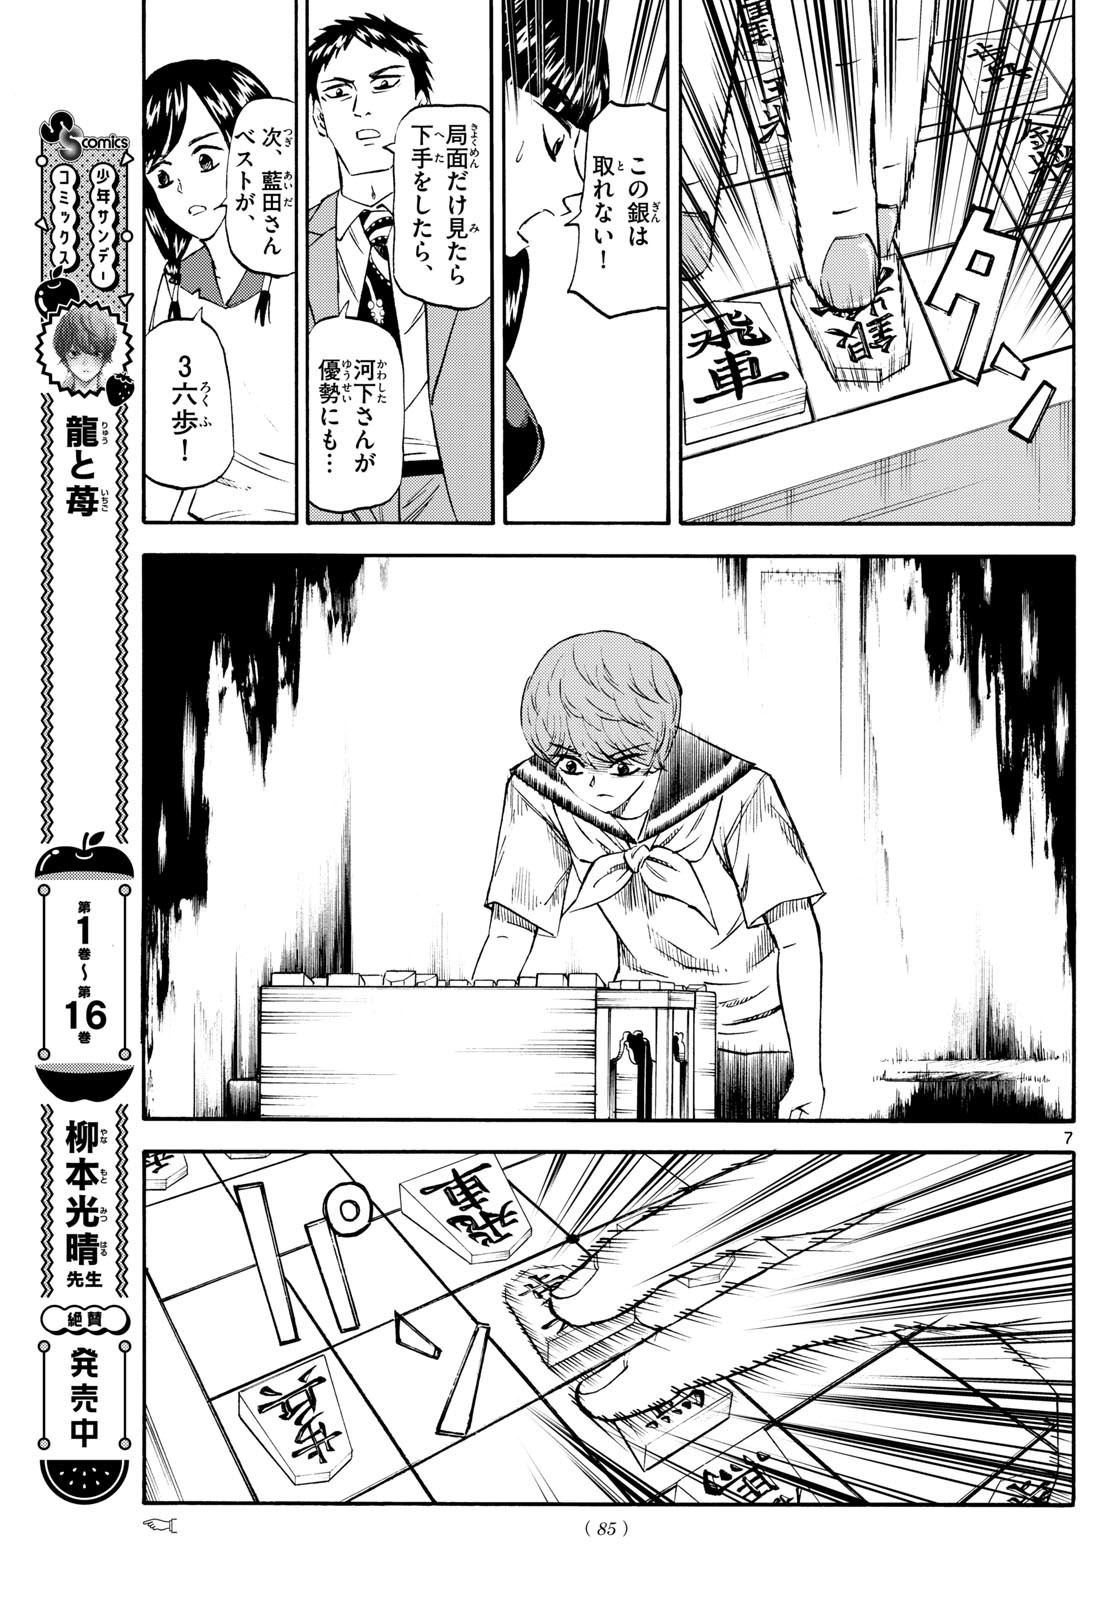 Ryu-to-Ichigo - Chapter 201 - Page 7